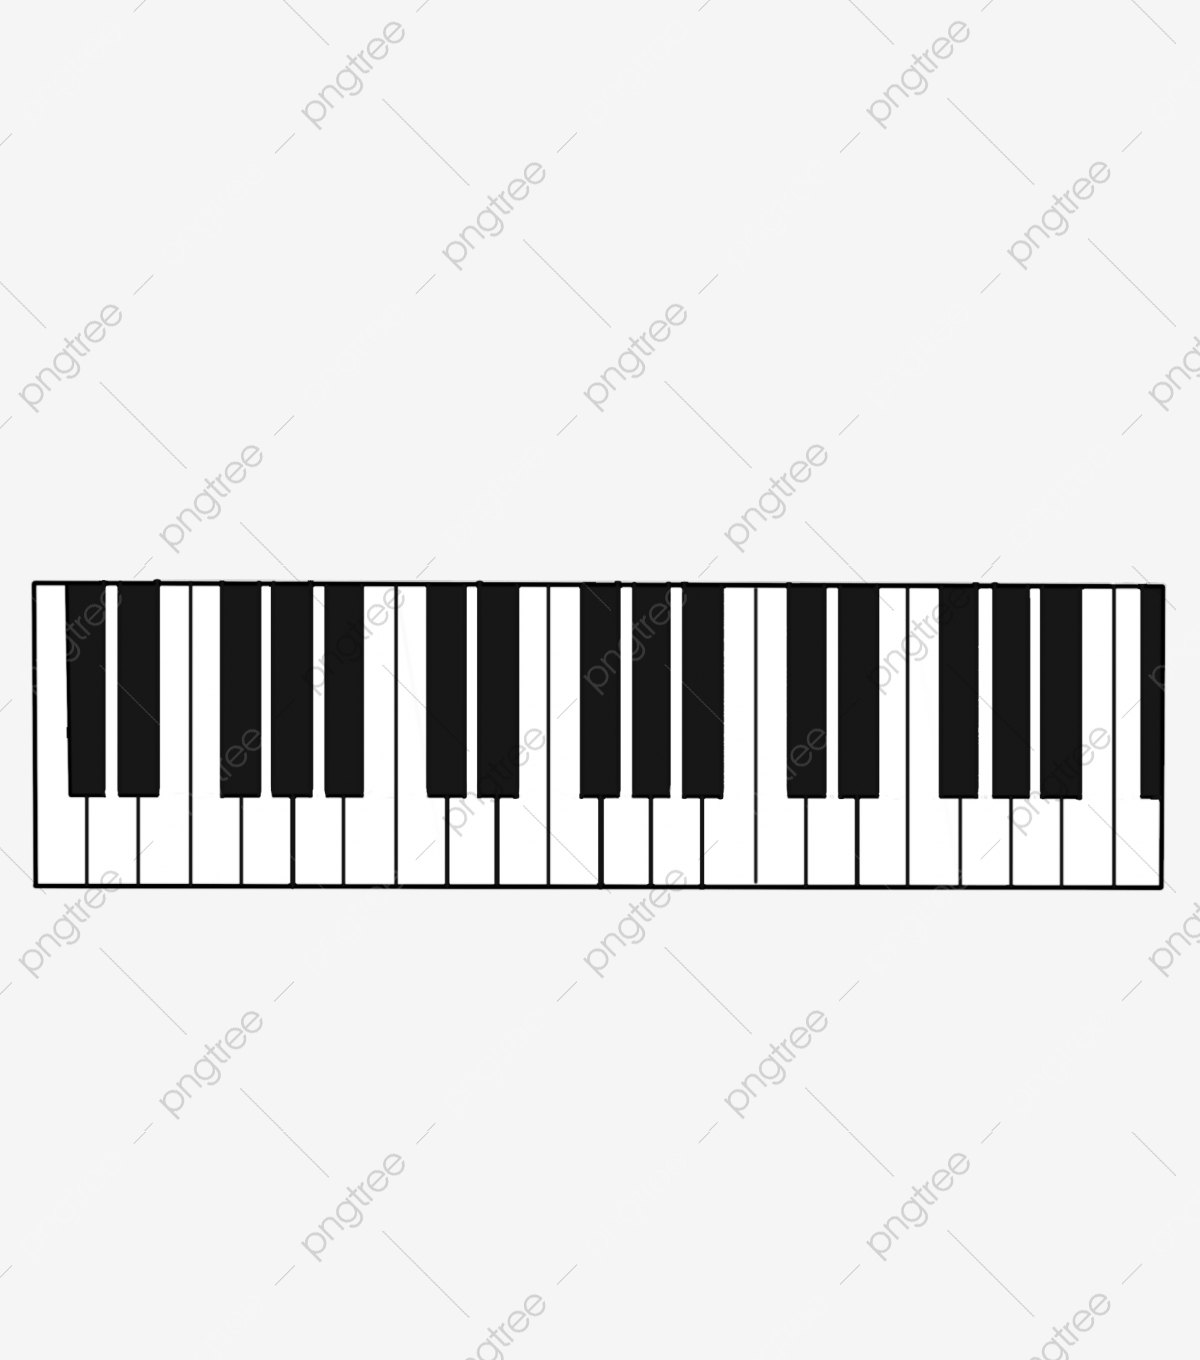 Октава фортепиано 2 октавы а4